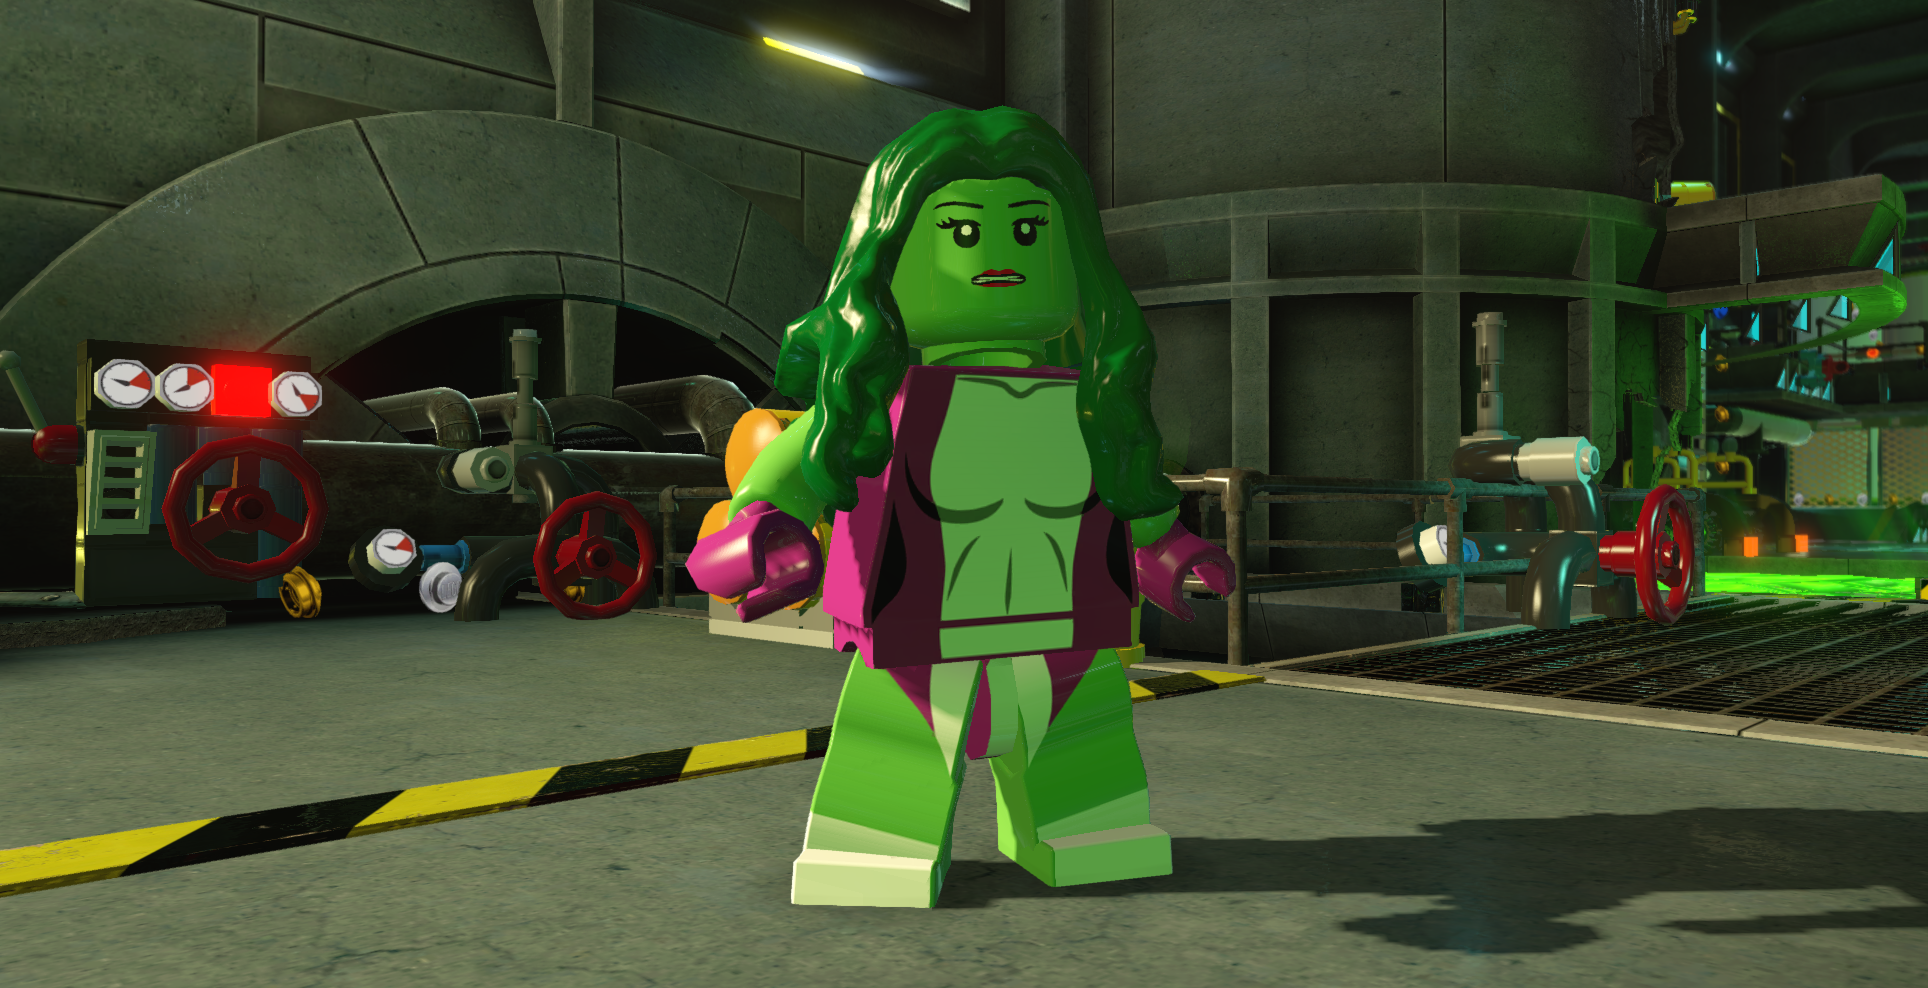 LEGO Marvel on Twitter: "Nice kicks, She-Hulk! #LEGOMarvel Twitter